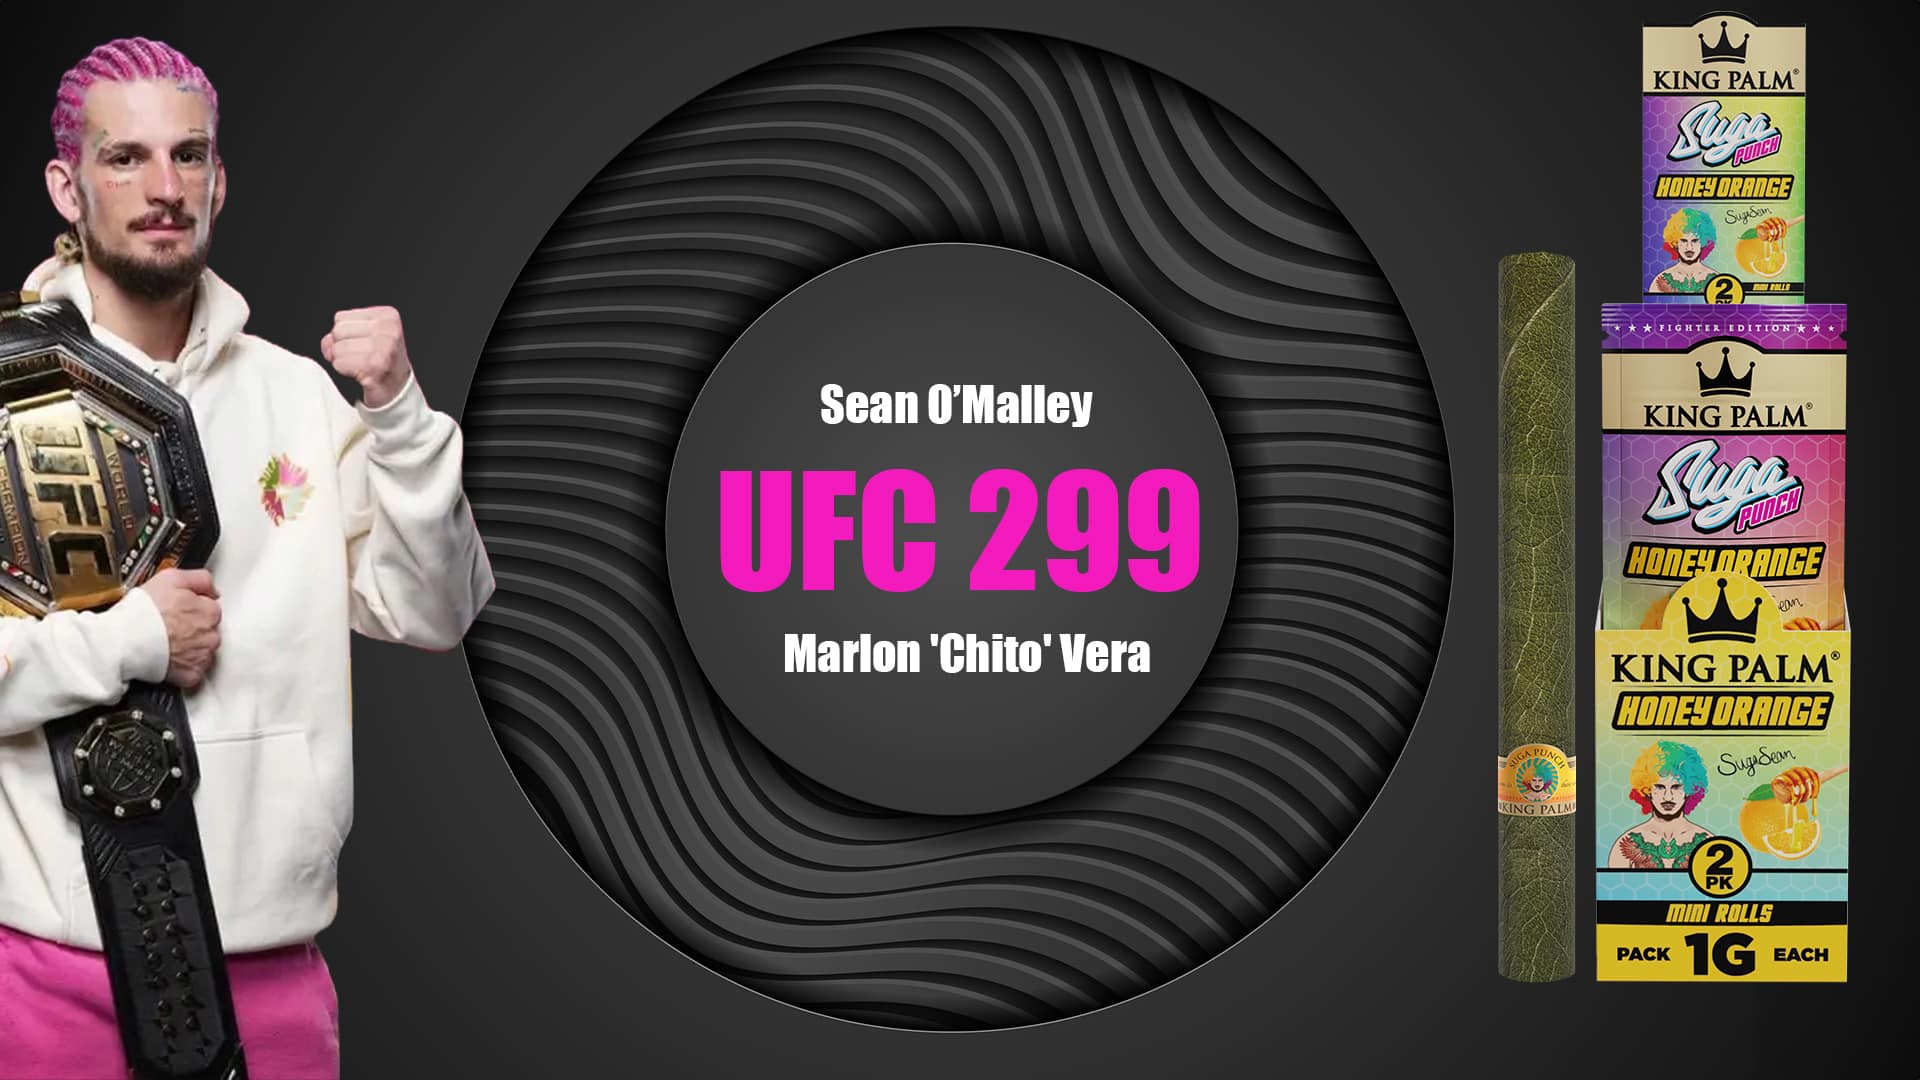 UFC 299: Sean O Malley Vs Vera Rematch